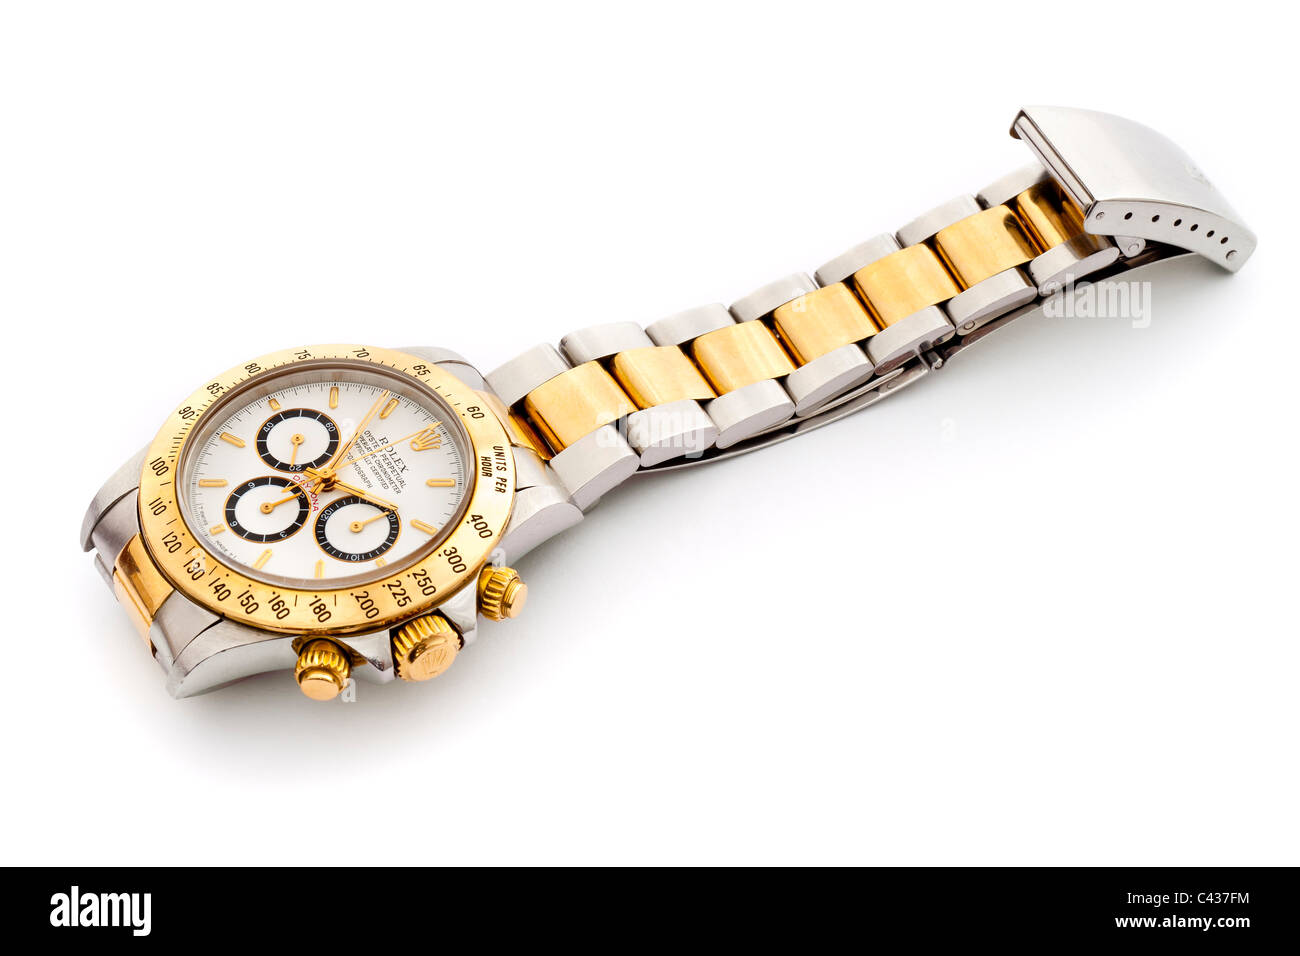 Cosmograph Daytona Rolex Oyster Perpetual Chronometer 18k et de l'acier  montre-bracelet chronographe suisse avec cadran blanc JMH4899 Photo Stock -  Alamy